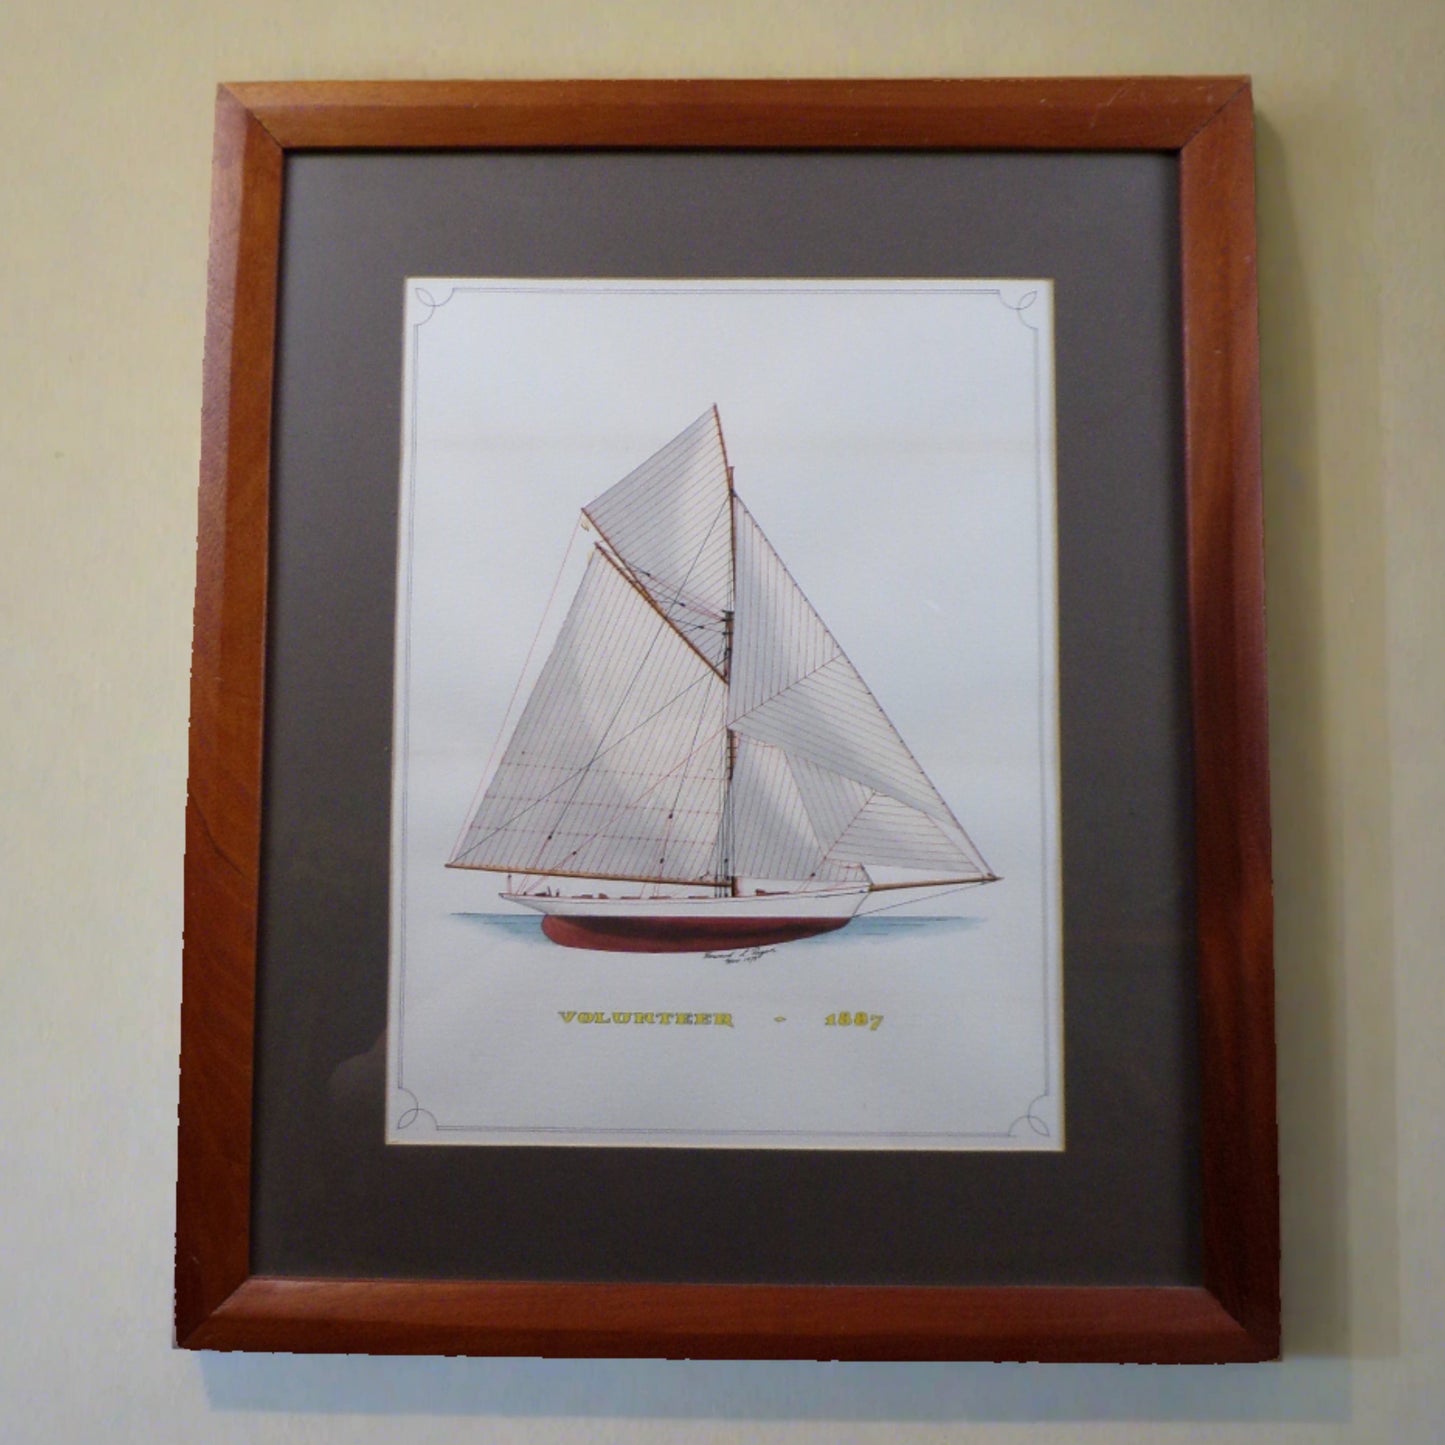 Howard Rogers Framed Ship Art - Volunteer 1887